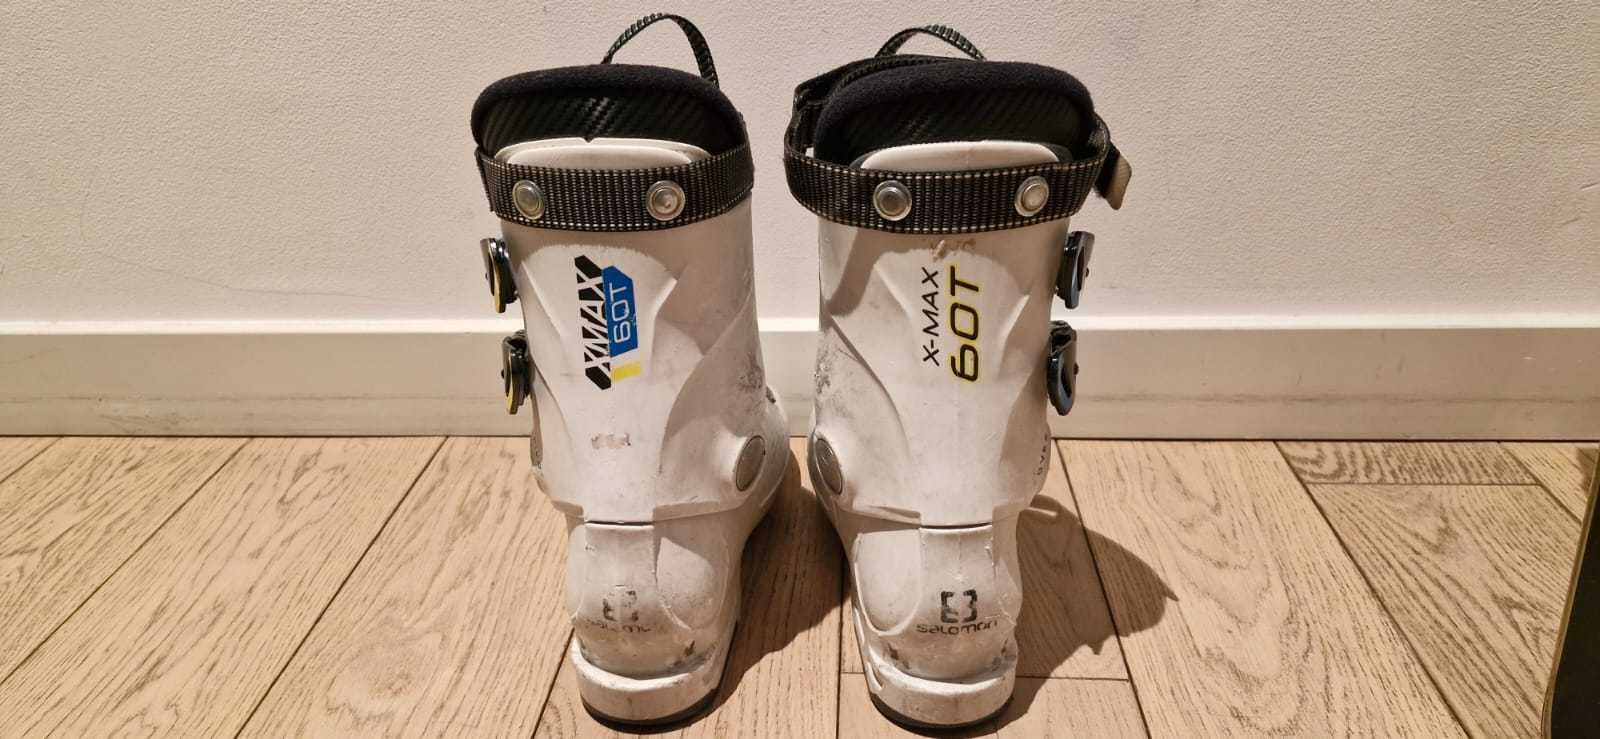 Buty narciarskie dziecięce Salomon roz. 24 - 24,5 cm